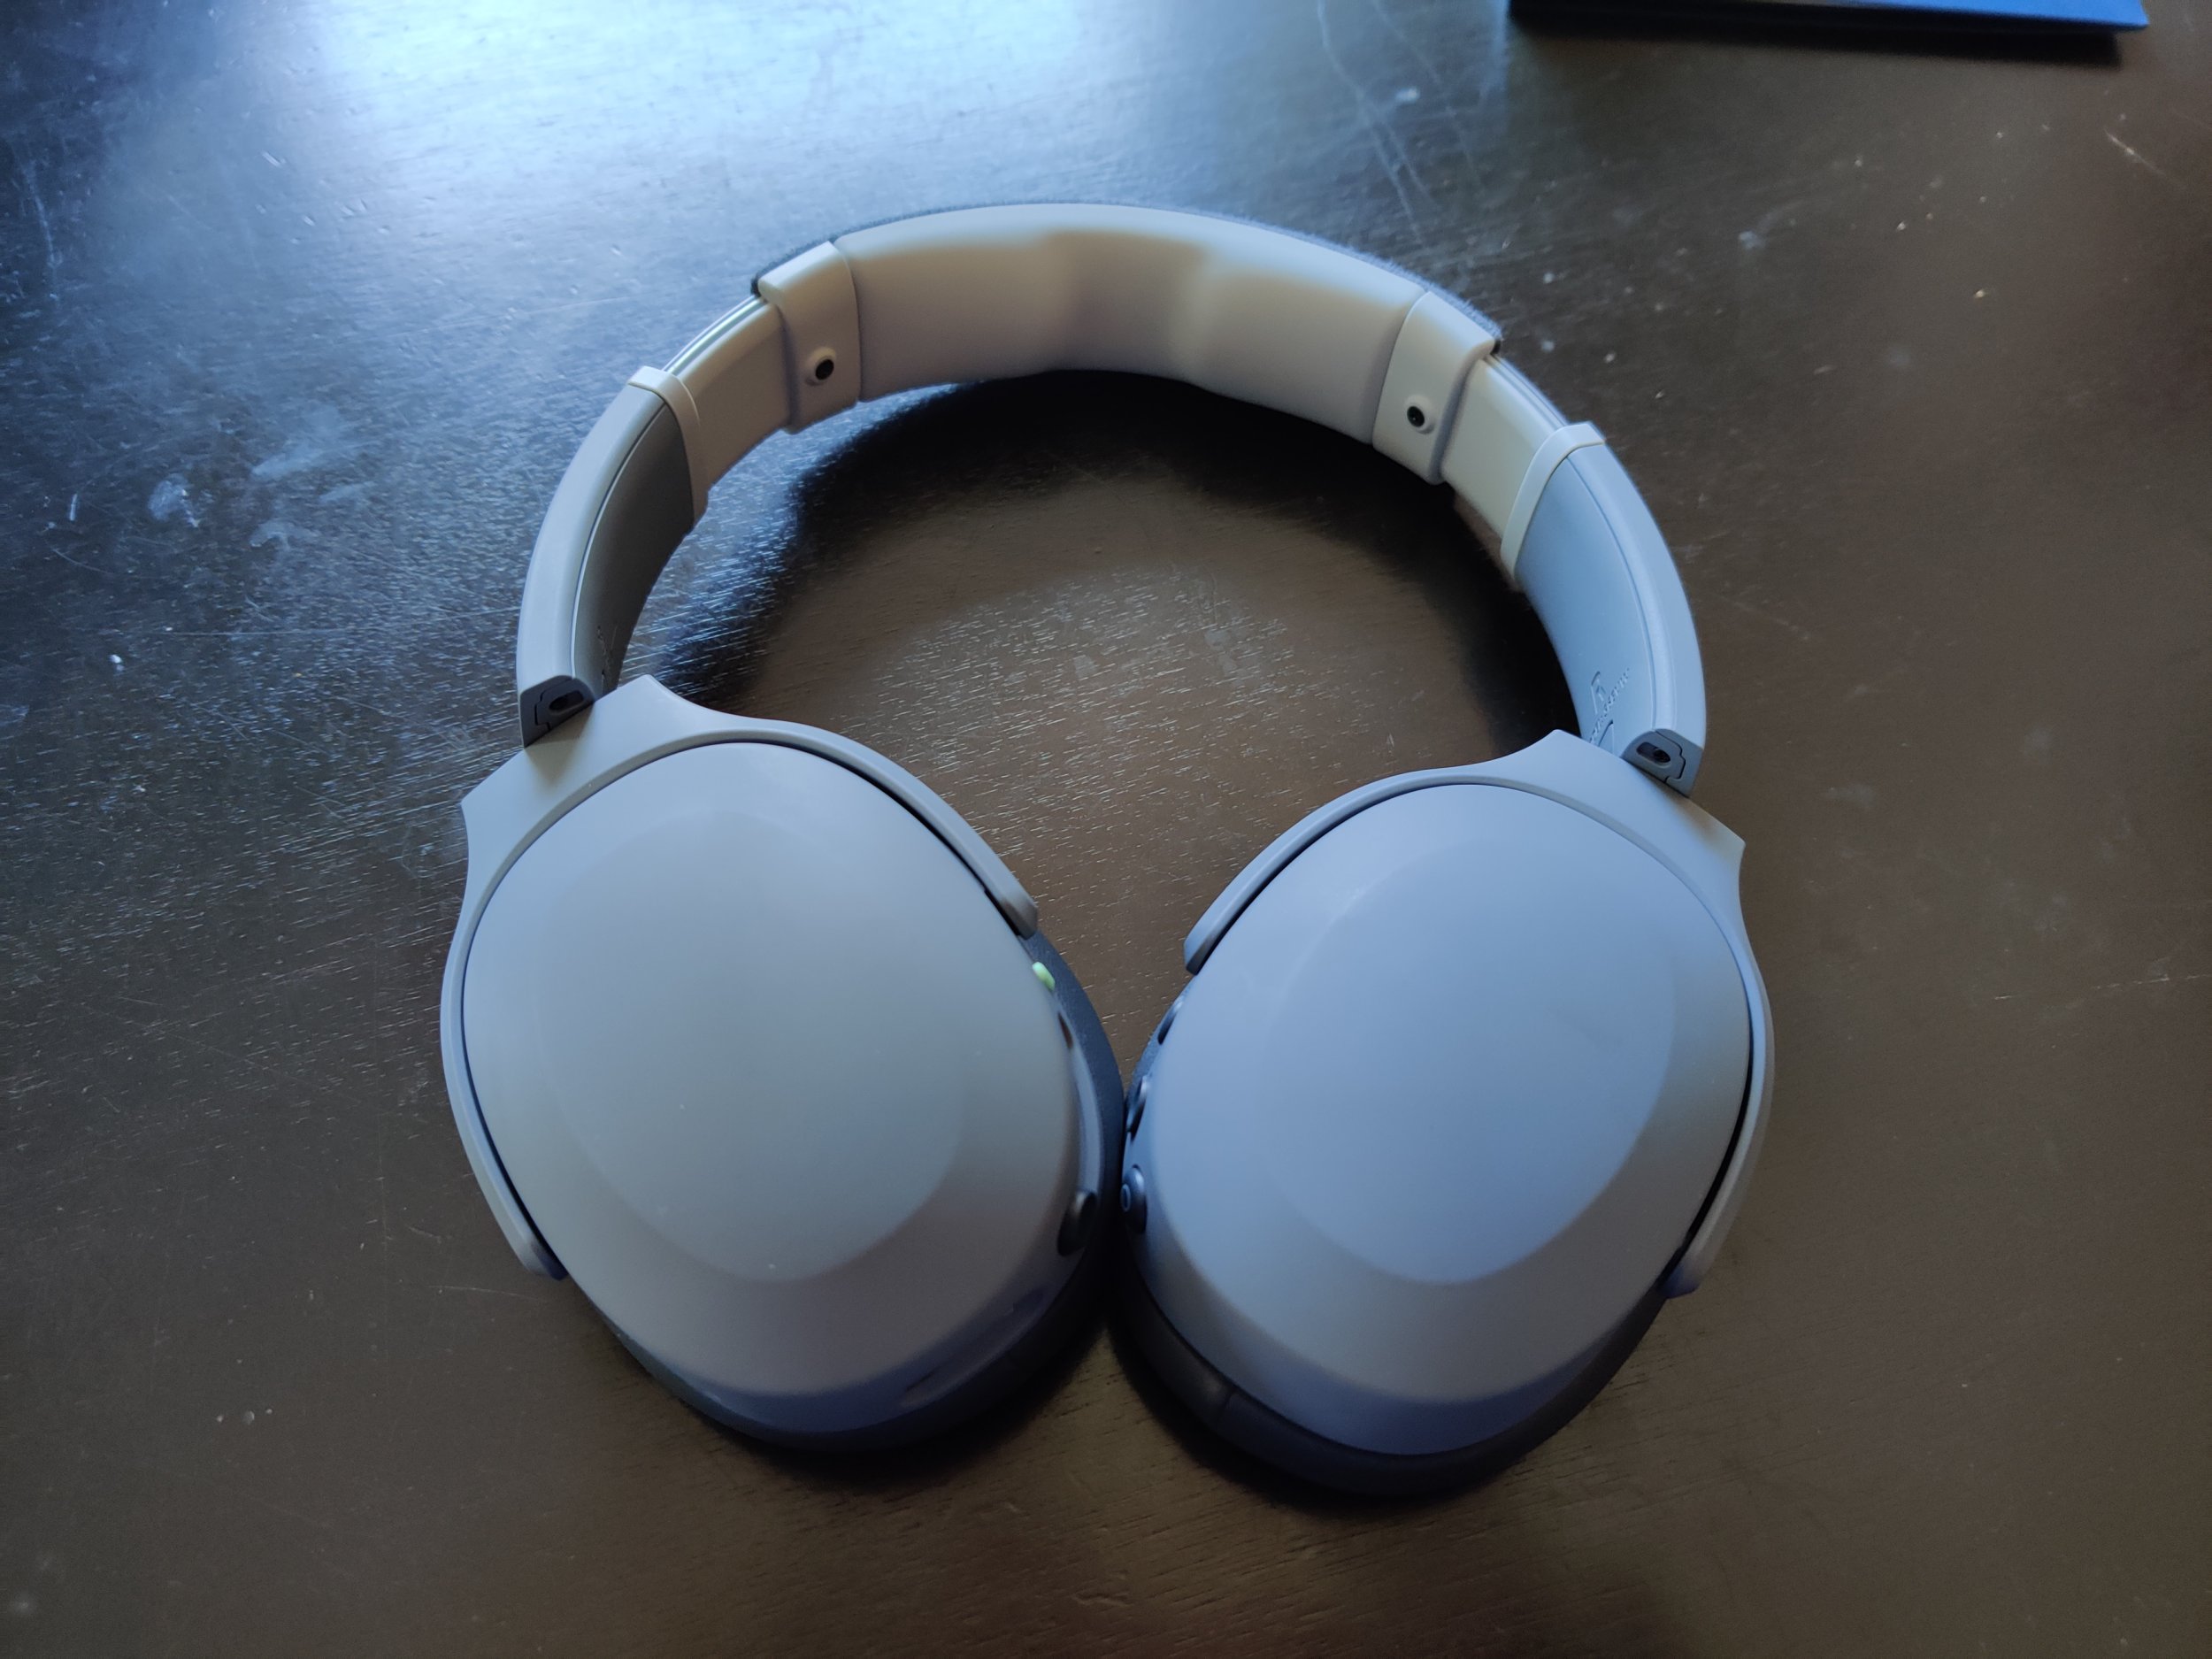 Skullcandy Crusher Evo Headphones Review: The Best Headset For